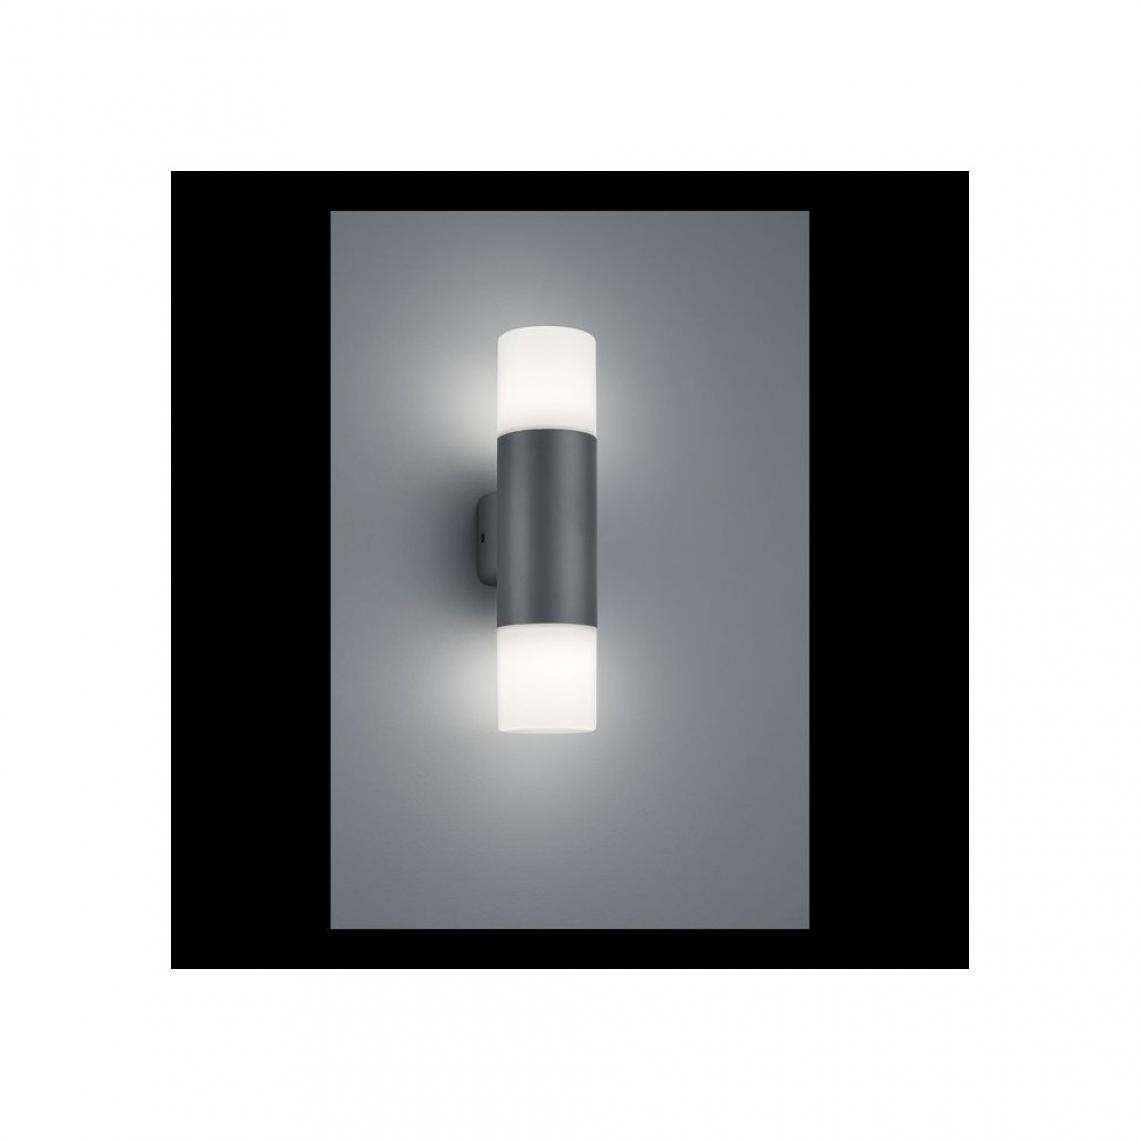 Boutica-Design - Applique Hoosic Anthracite Blanc 2x28W E27 Detecteur Mouvement - Applique, hublot